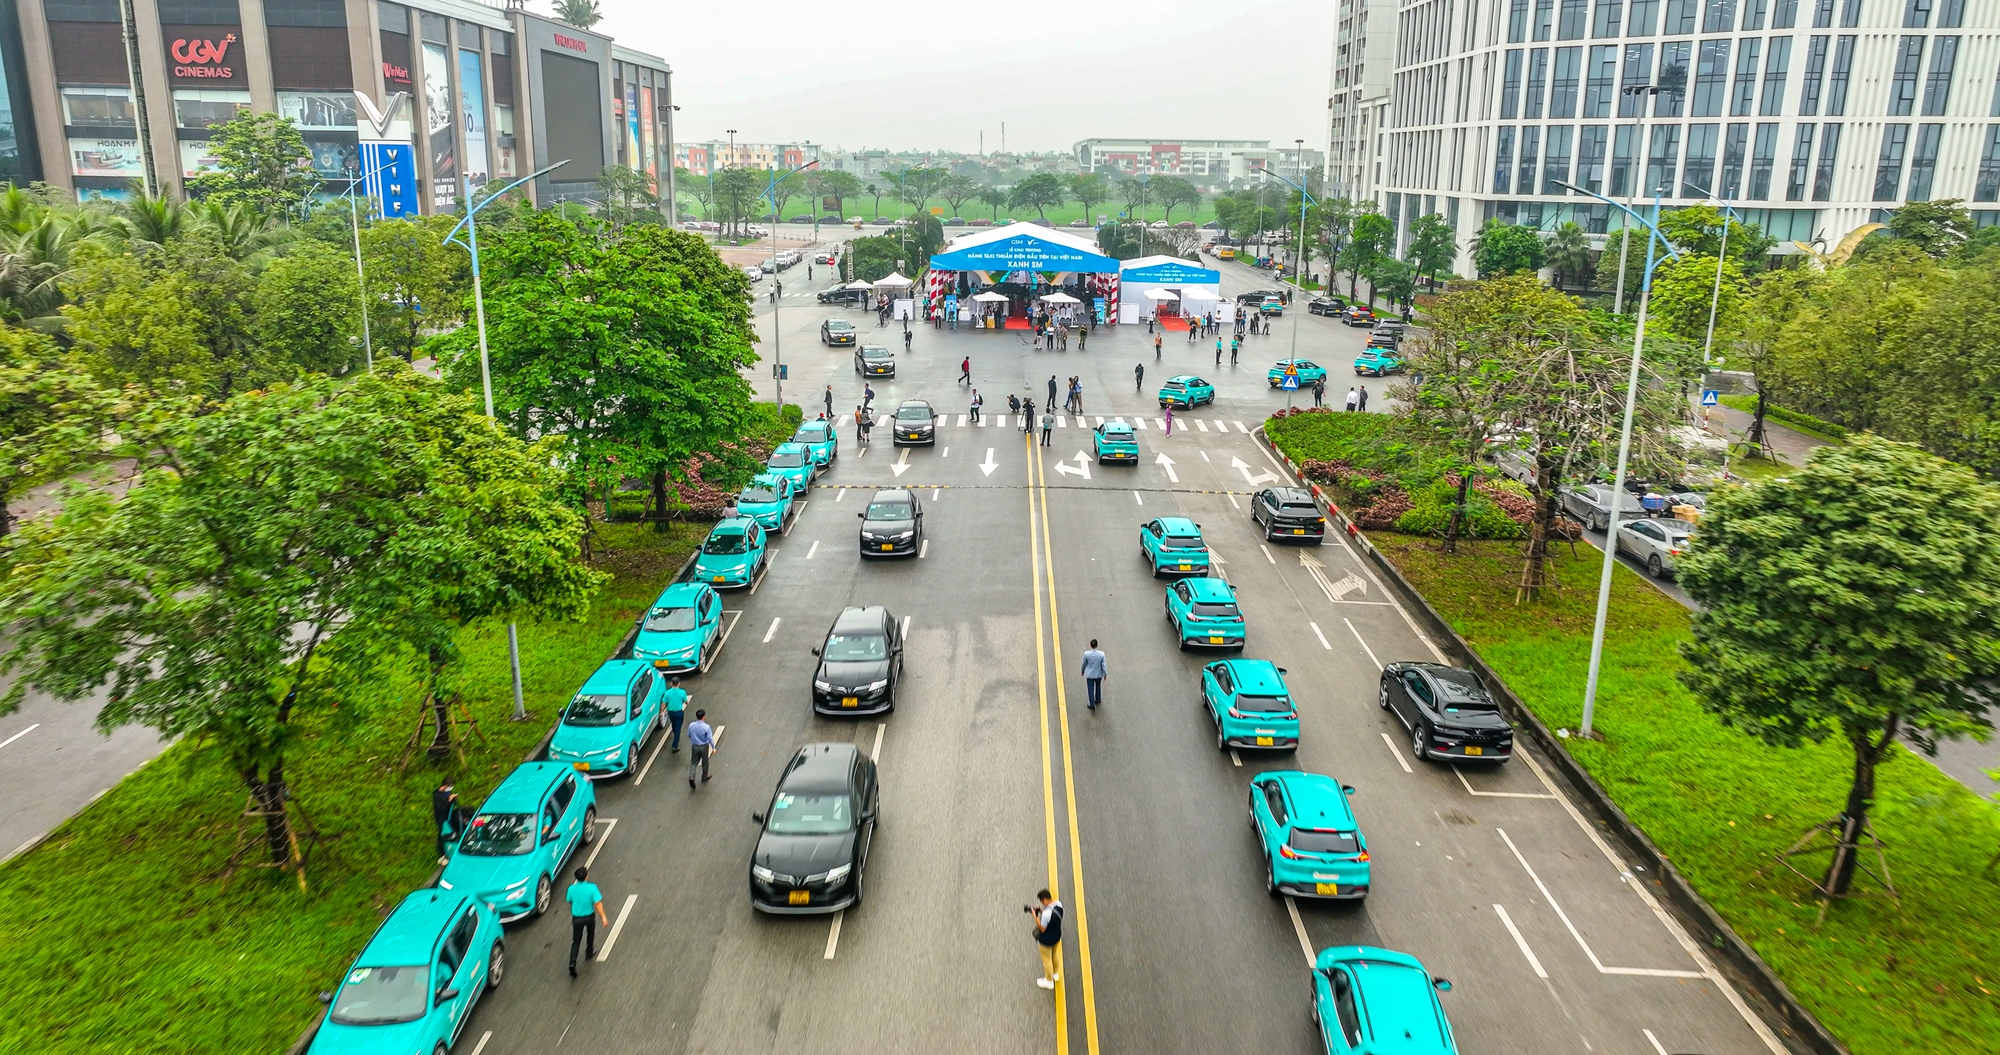 Hãng taxi điện đầu tiên chính thức lăn bánh tại Hà Nội - Ảnh 3.